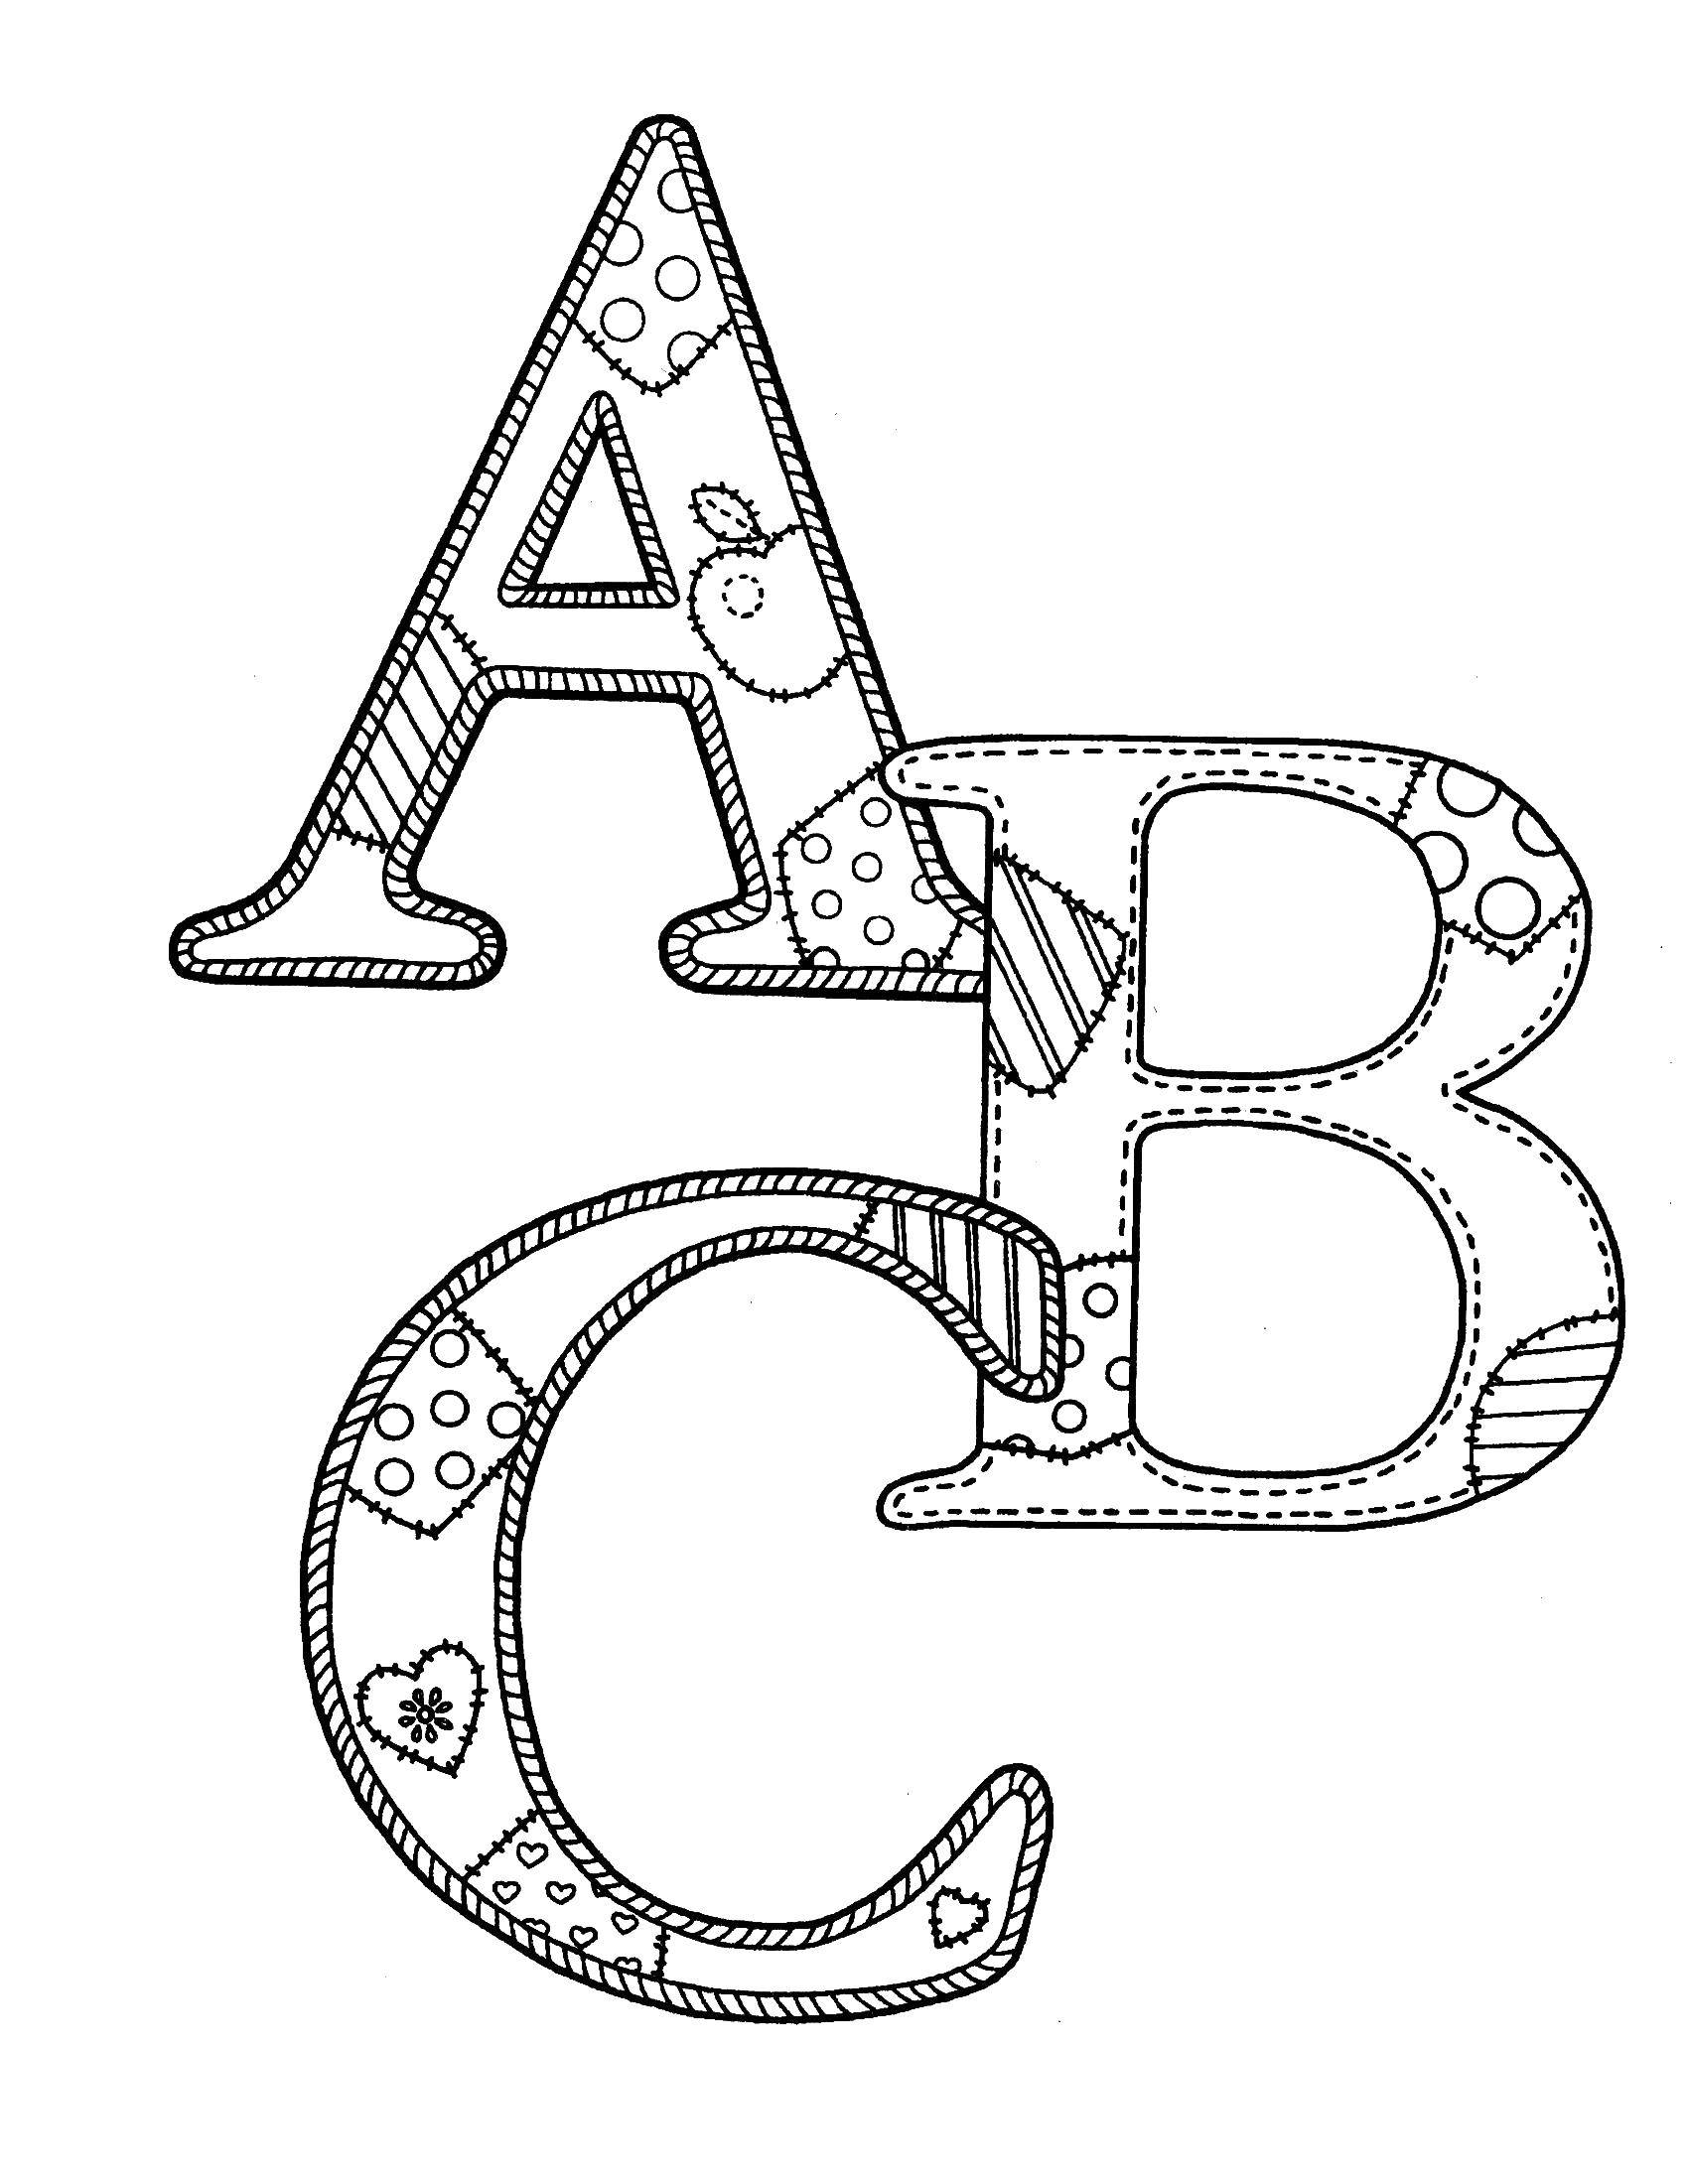 Название: Раскраска Abc. Категория: Английский. Теги: A, B, C, LETTERS.